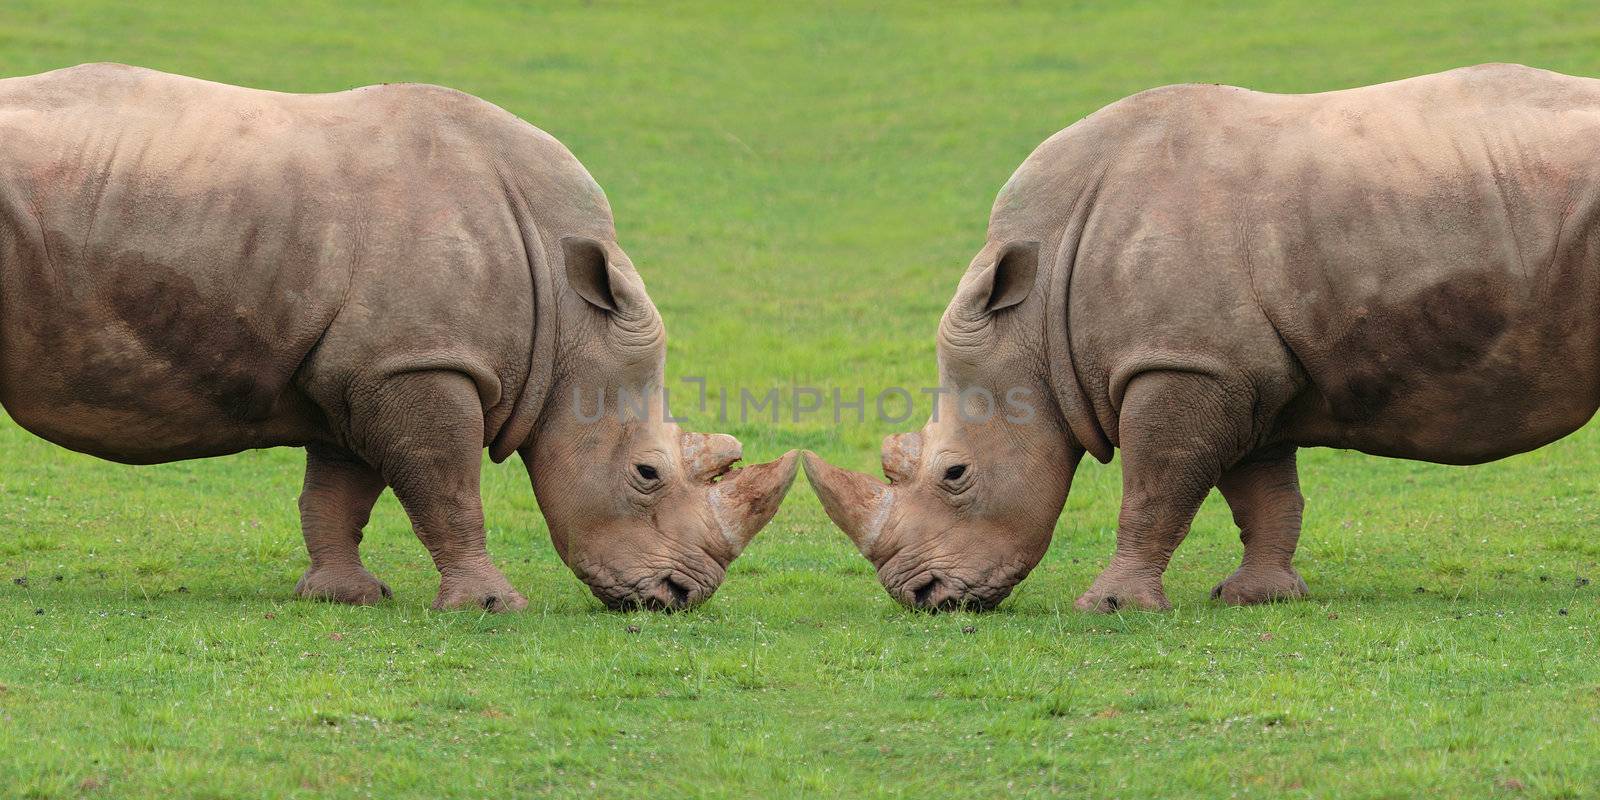 Rhinoceros by werny